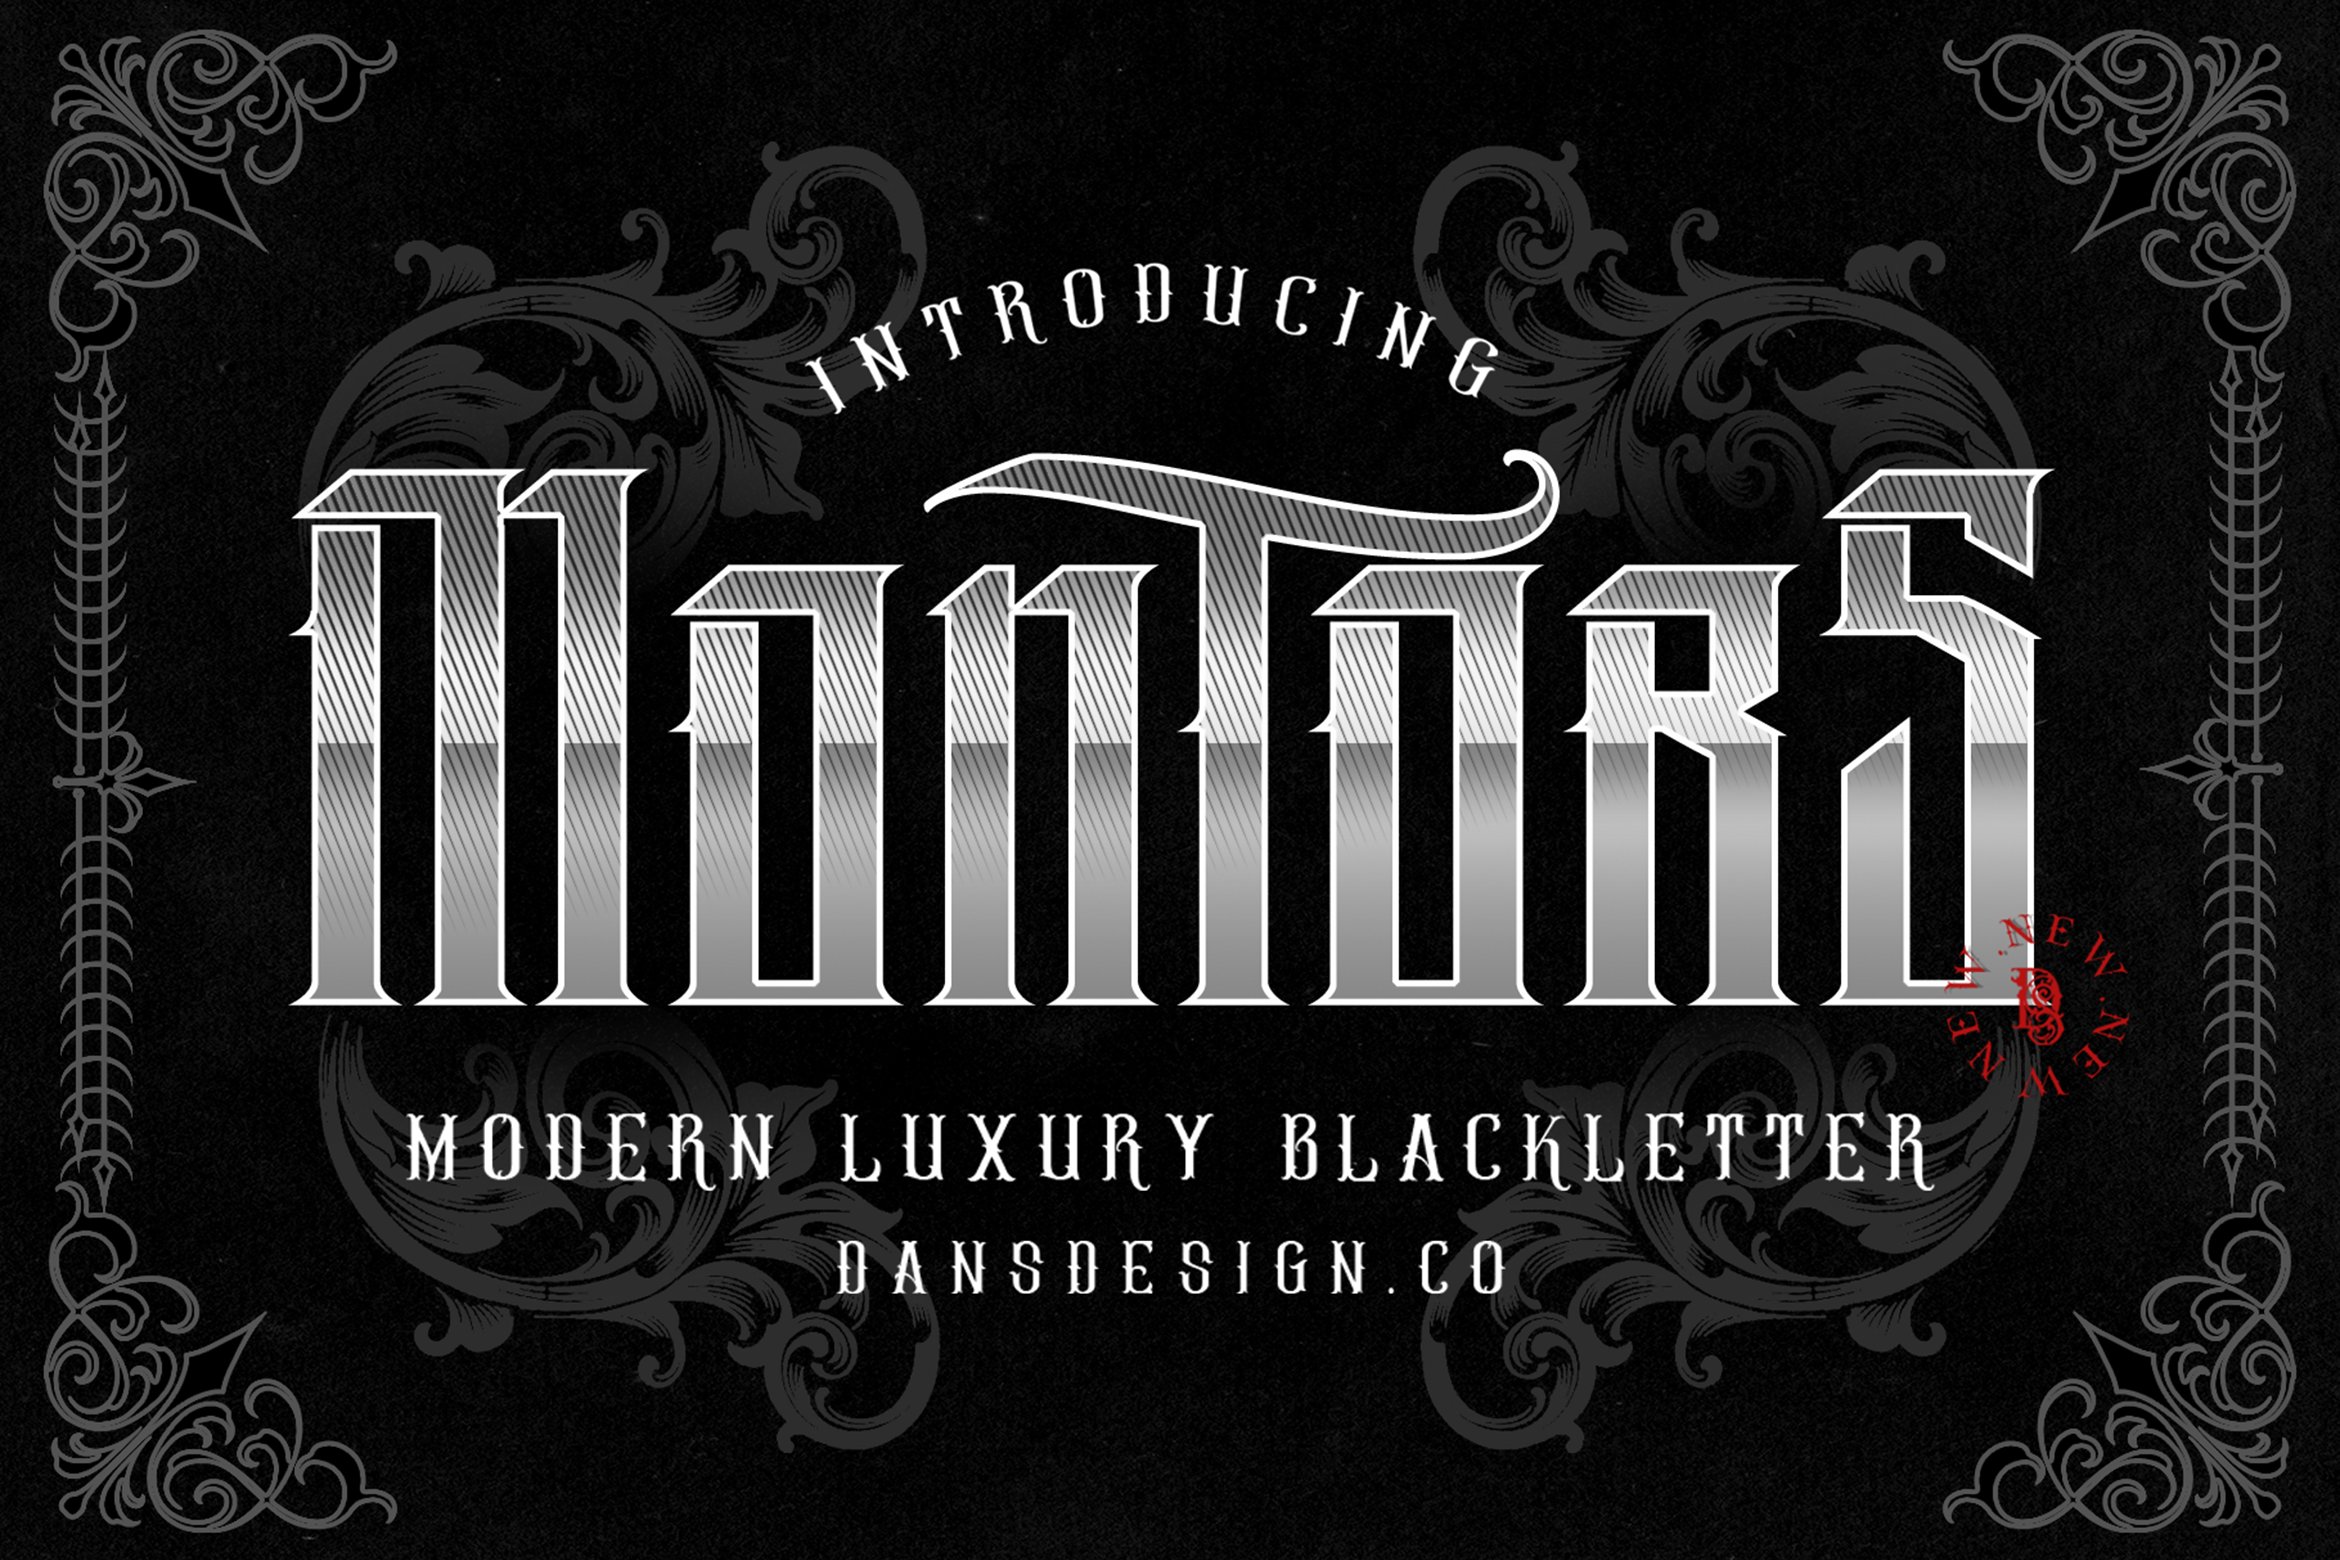 MONTORS MODERN BLACKLETTER cover image.